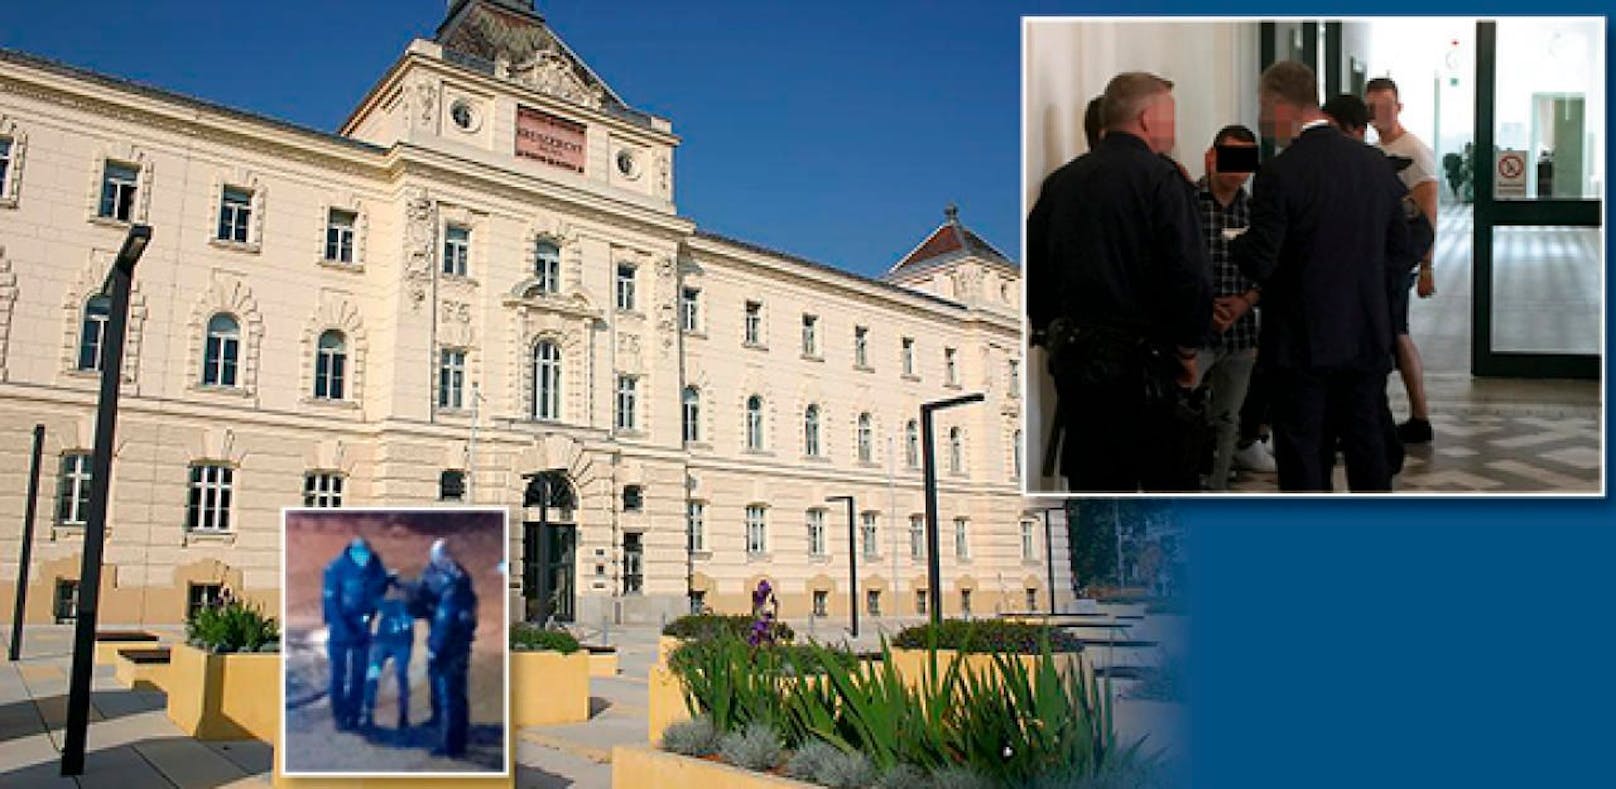 Kl. Bild li.: Verhaftung; re.: 18-Jähriger vor Gericht in St. Pölten